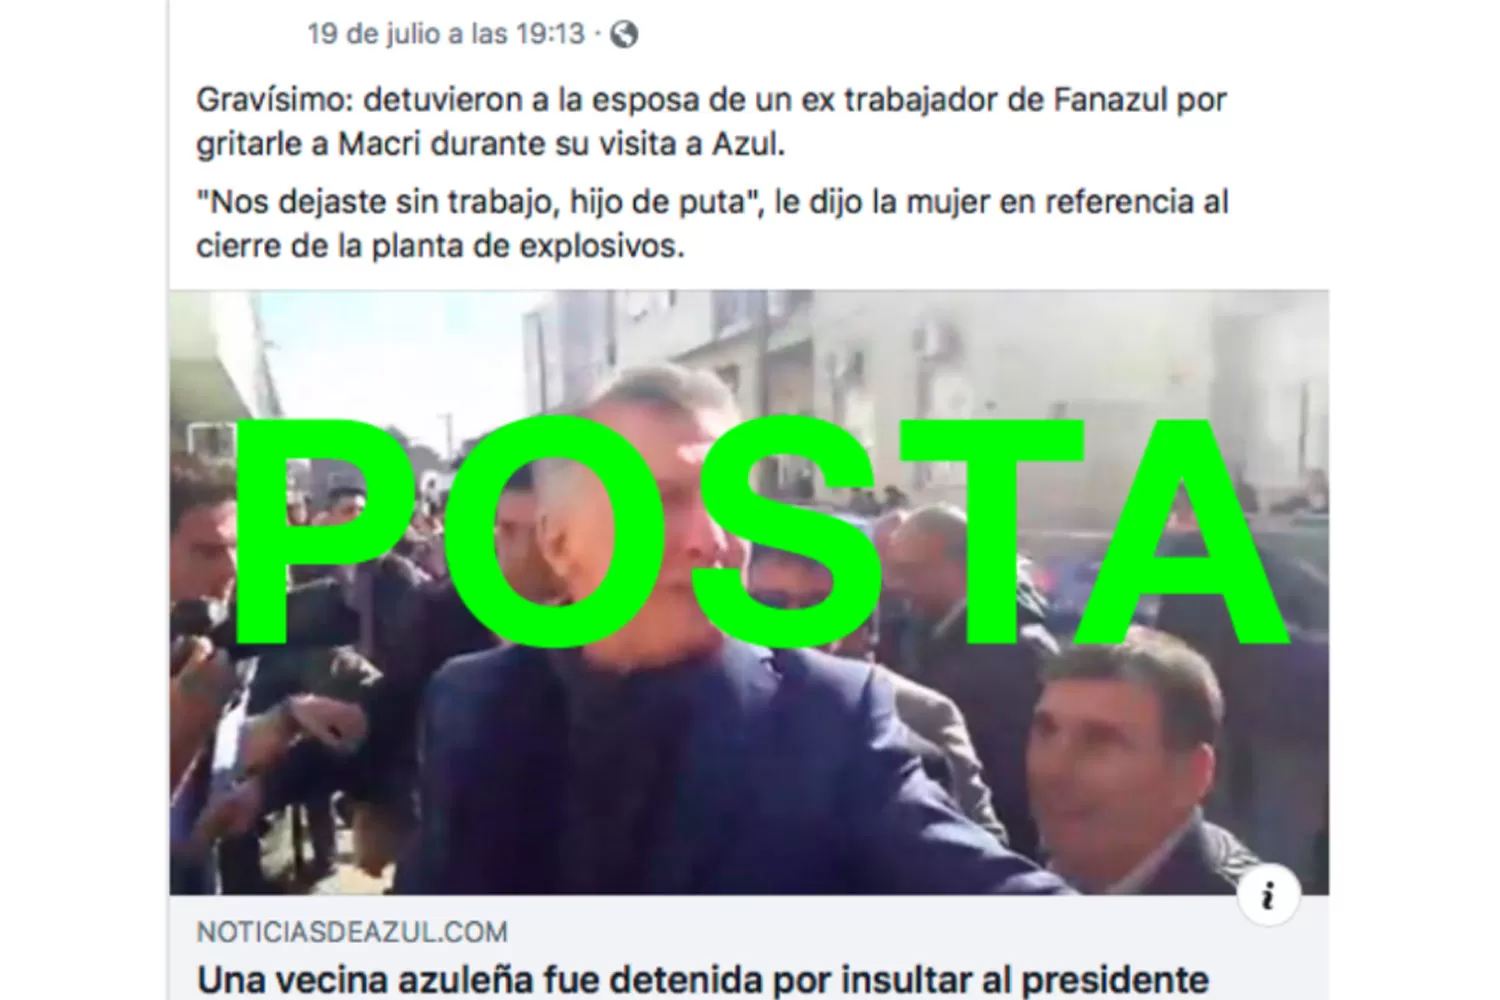 Sí, detuvieron a una mujer en Azul por insultar a Macri